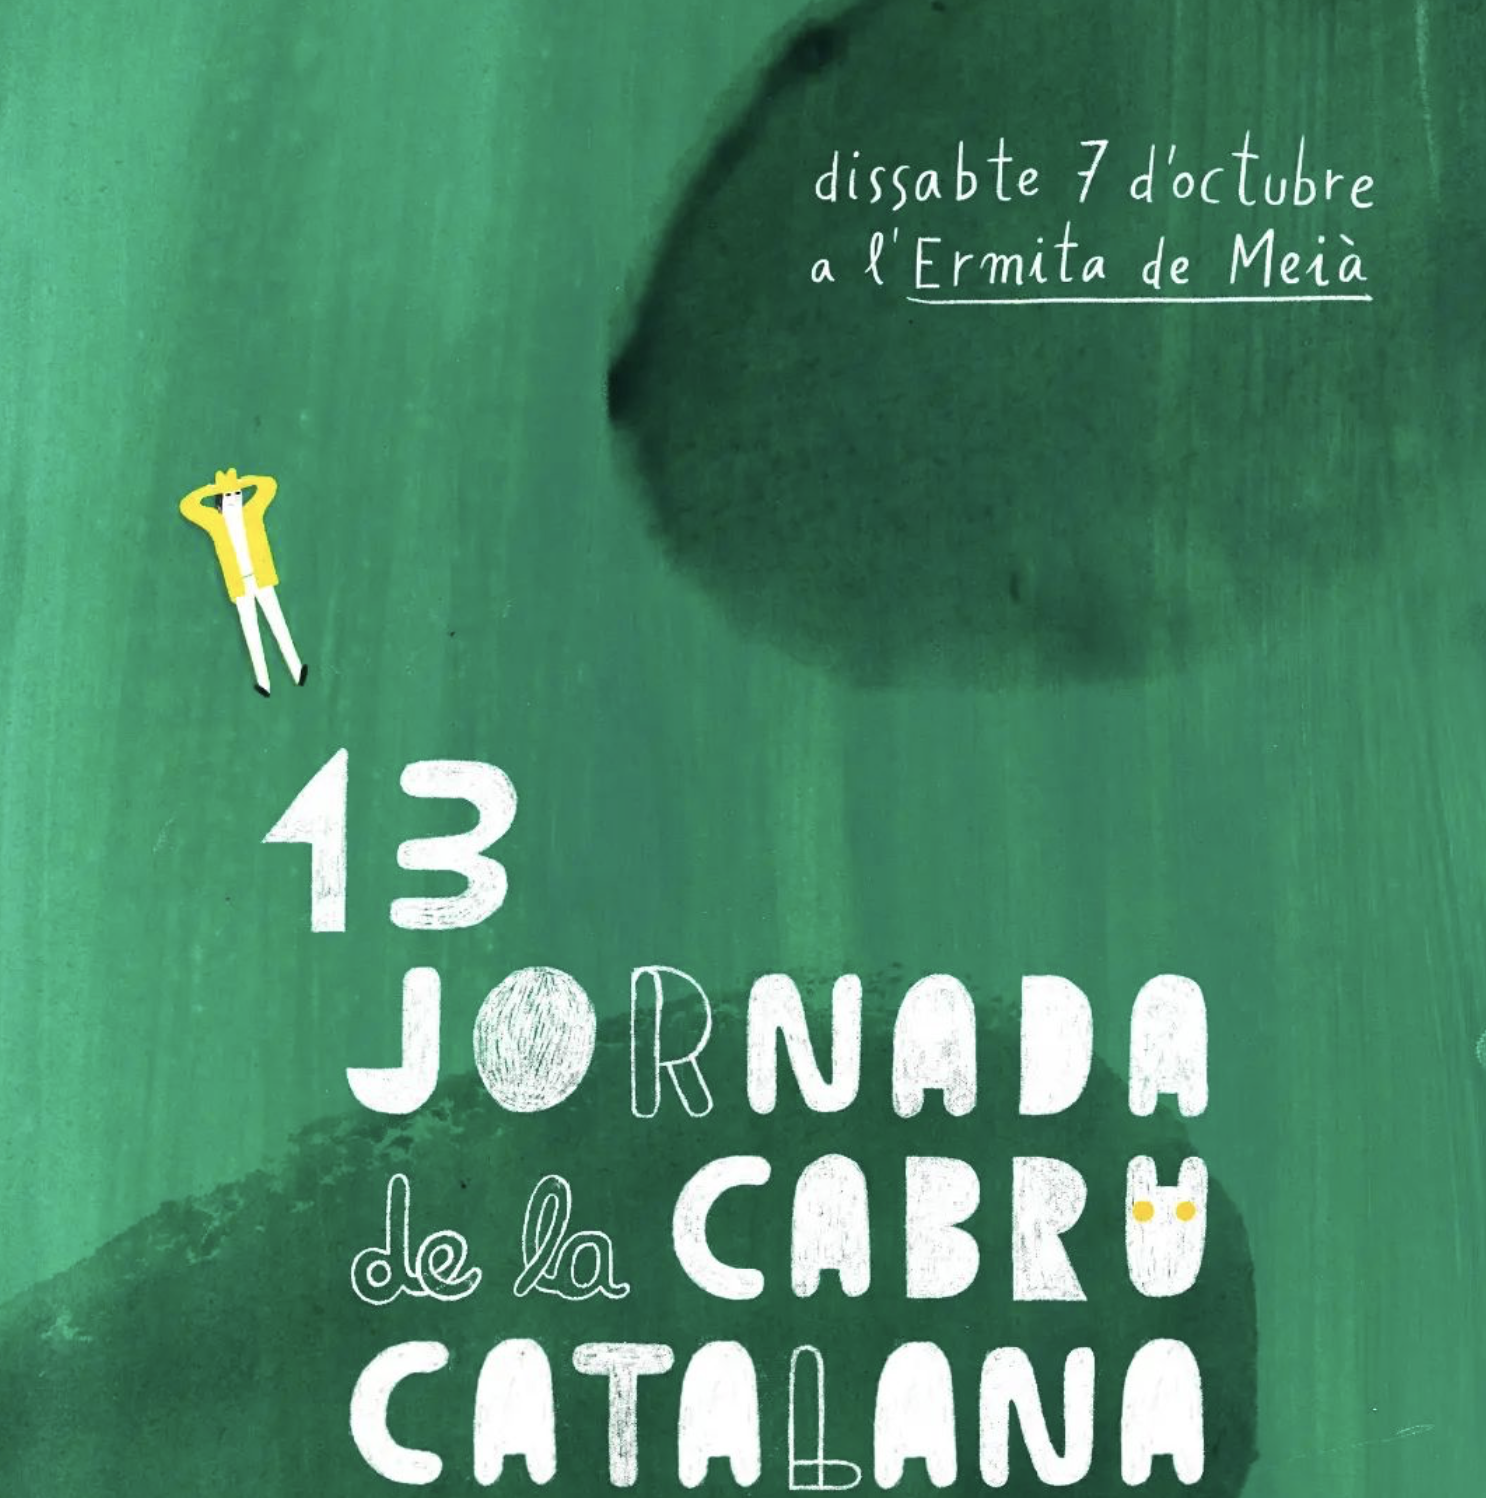 Comunals a la jornada de la Cabra Catalana